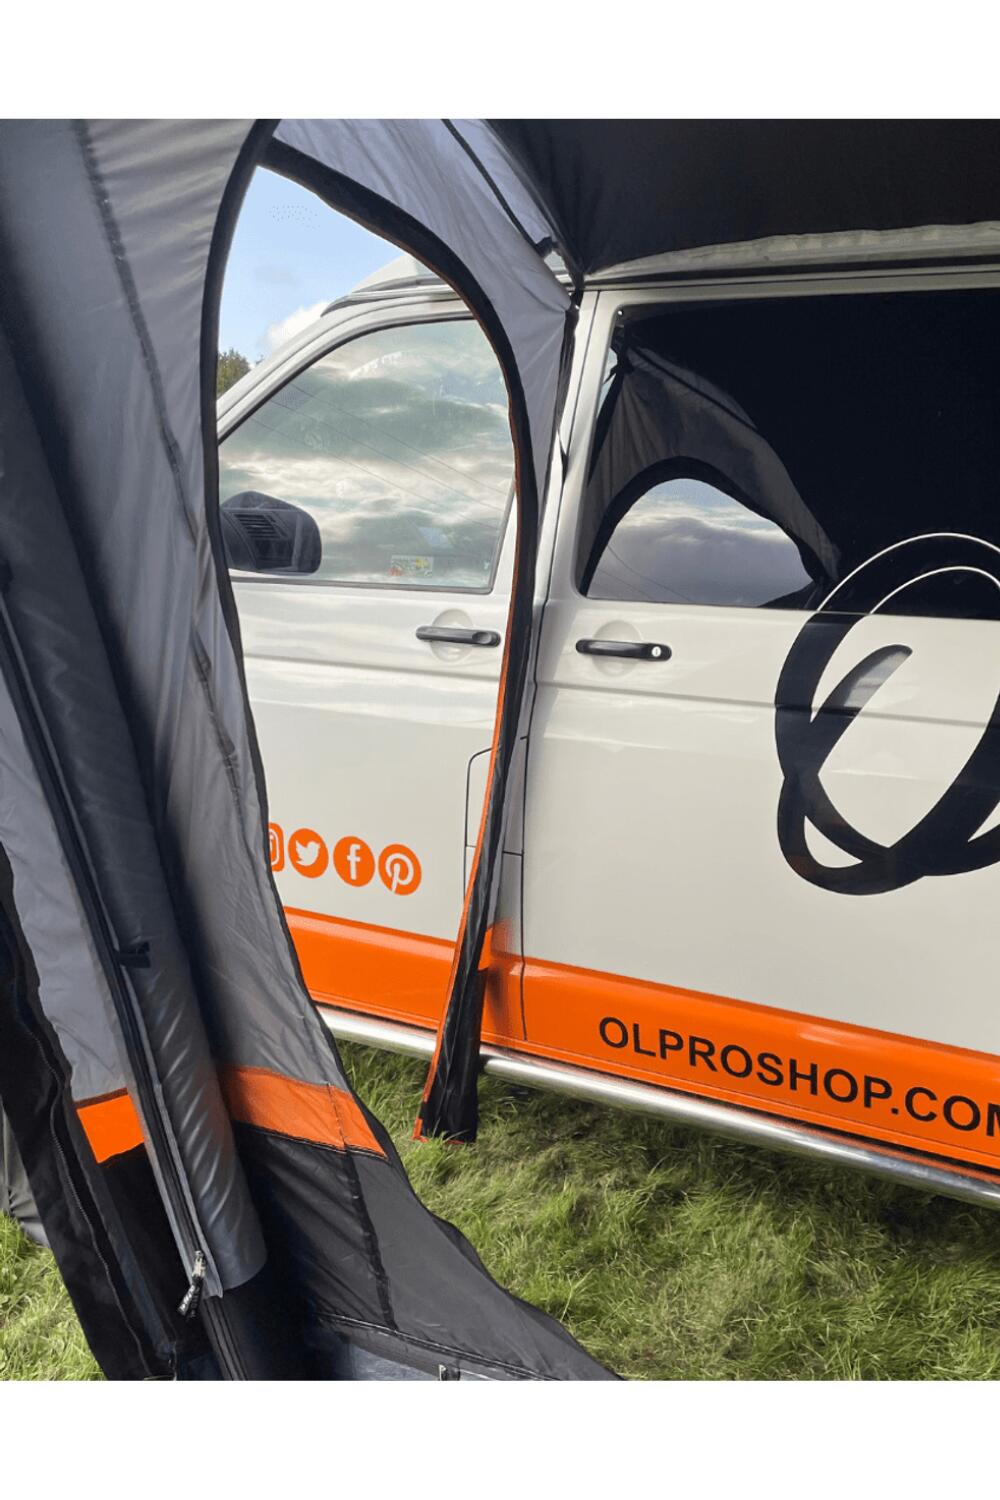 OLPRO Cocoon Breeze v2 Campervan Awning (Charcoal/Orange) 4/7